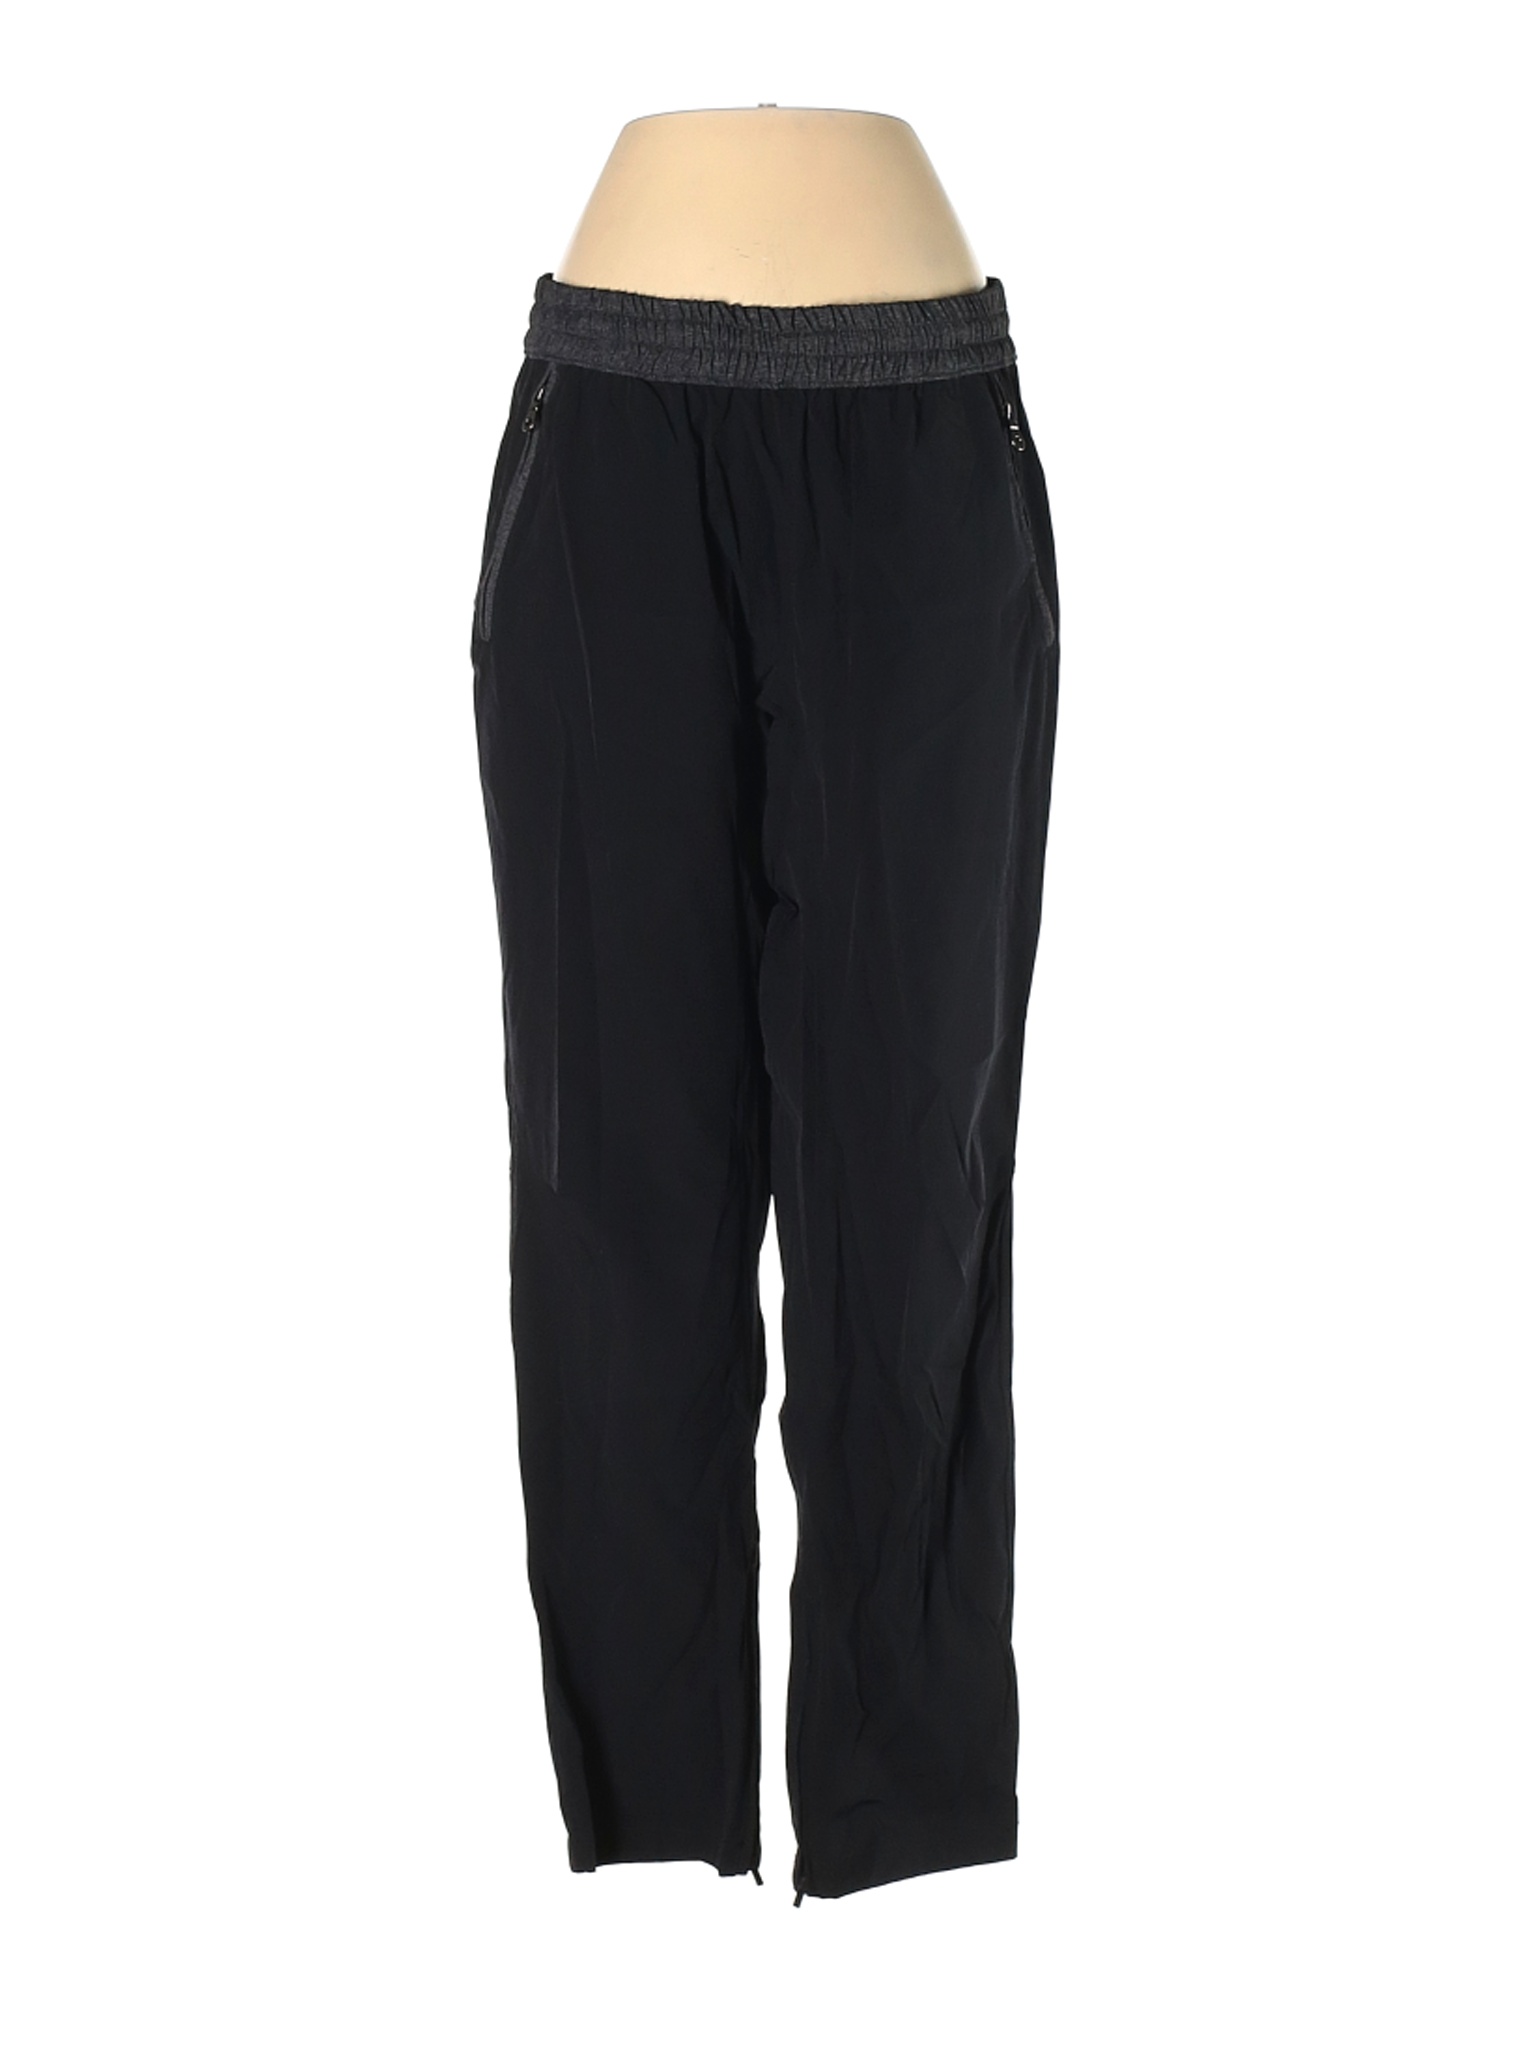 DKNY Women Black Active Pants S | eBay